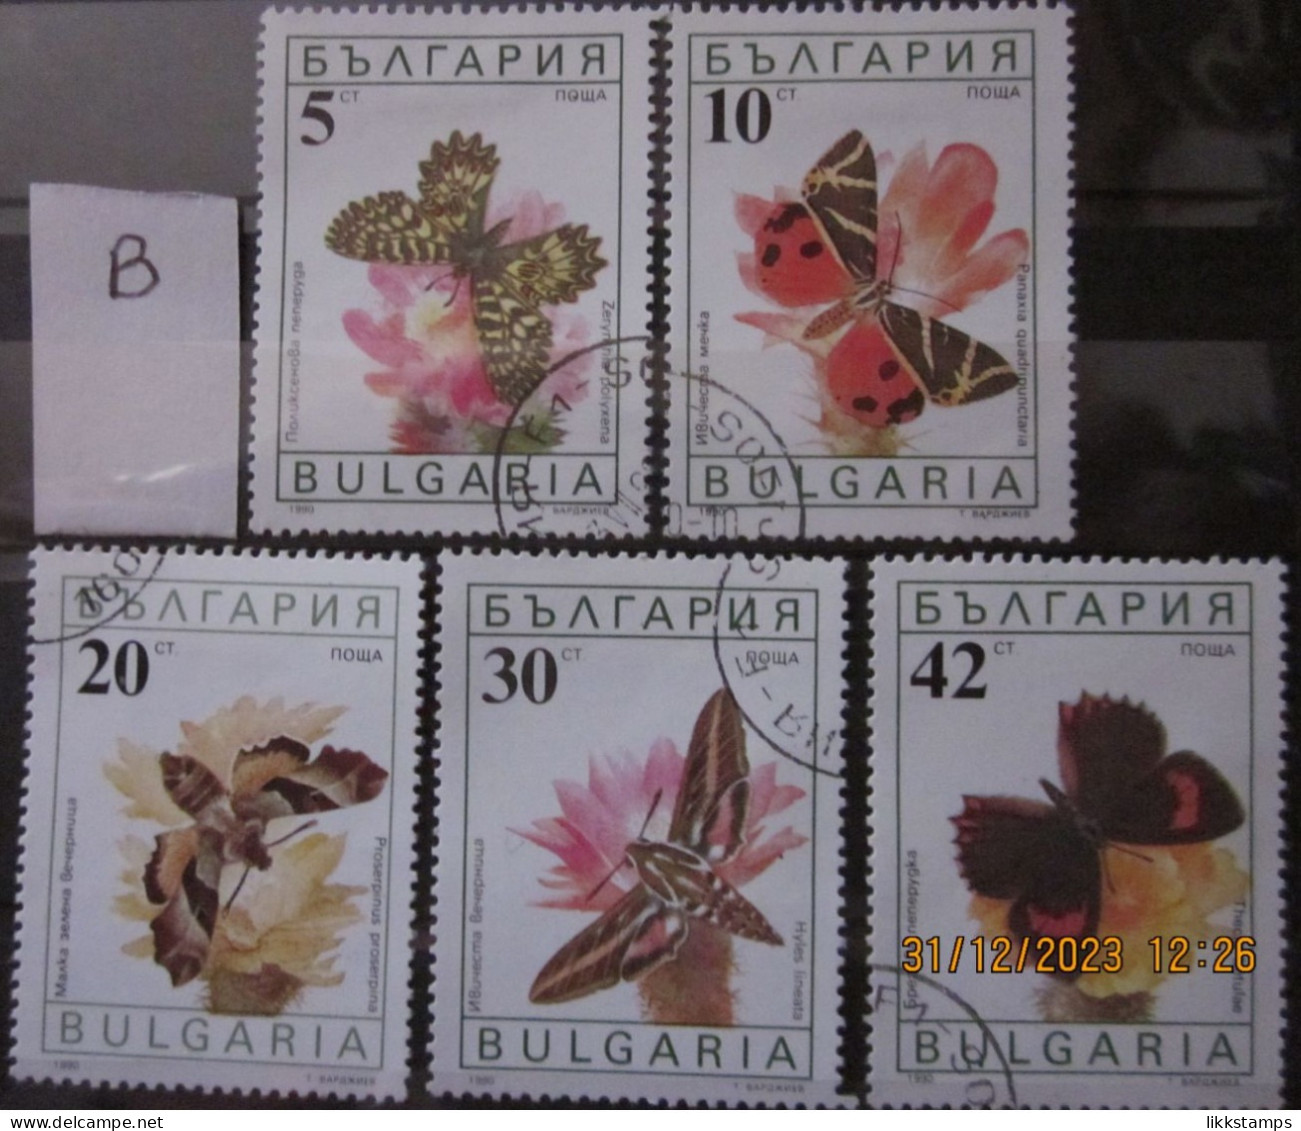 BULGARIA 1990 ~ S.G. 3699 - 3703, ~ 'LOT B' ~ BUTTERFLIES AND MOTHS. ~  VFU #02917 - Gebraucht